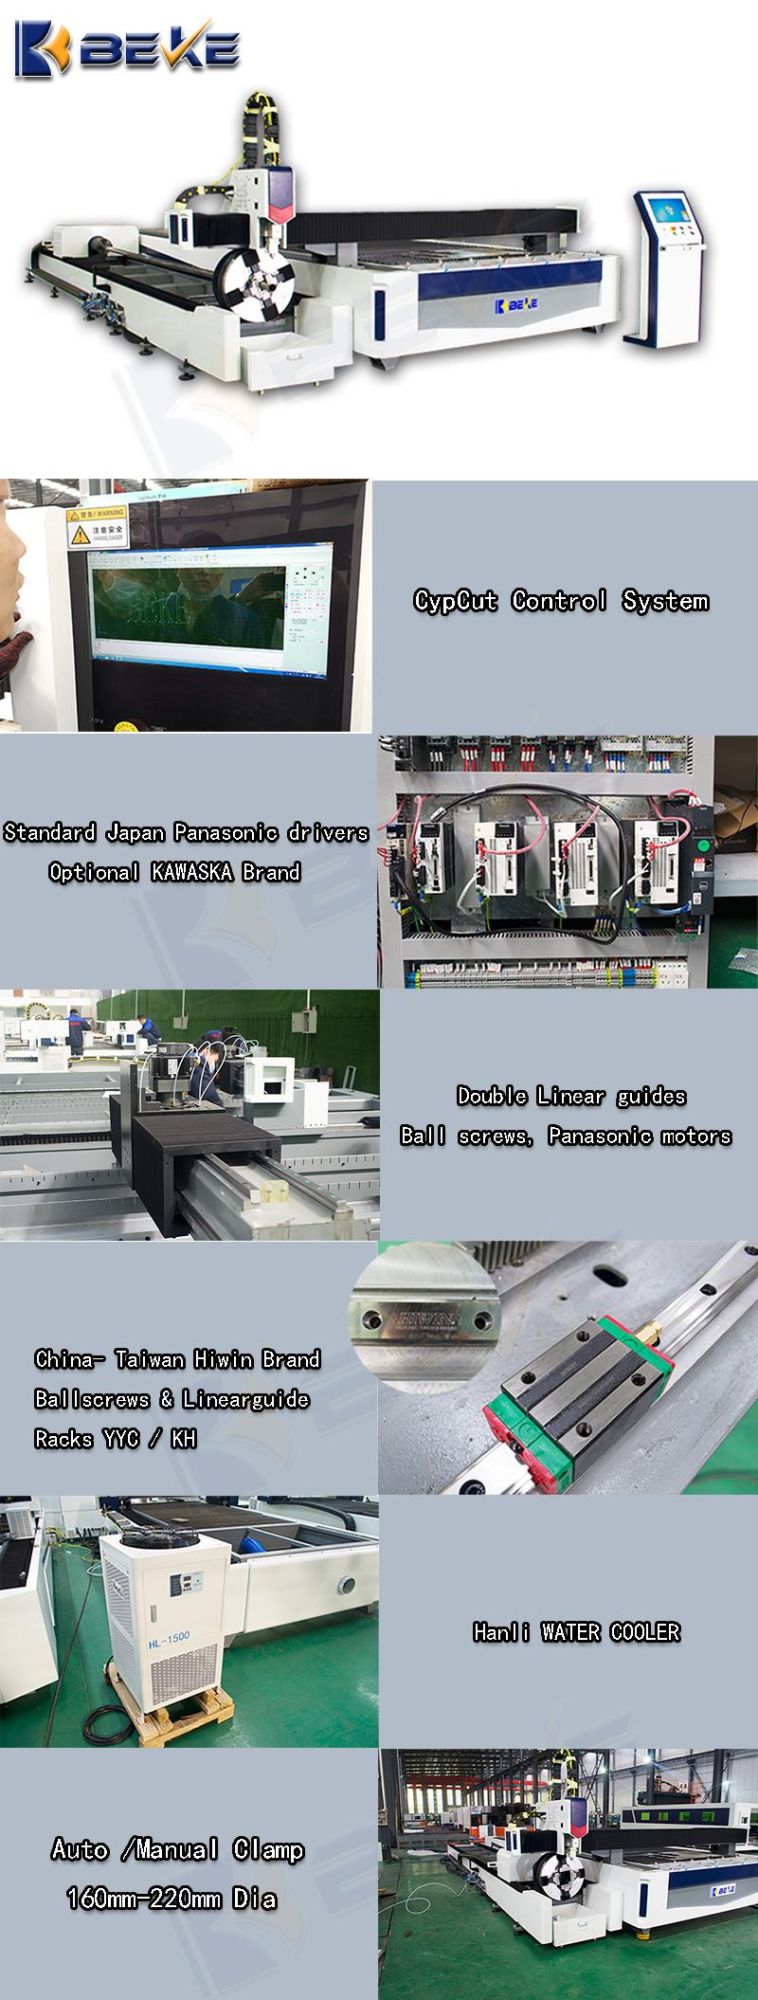 Nanjing Beke Best Selling 4015 1500W Plate Pipe Metal Sheetlaser Cutting Machine Factroy Price